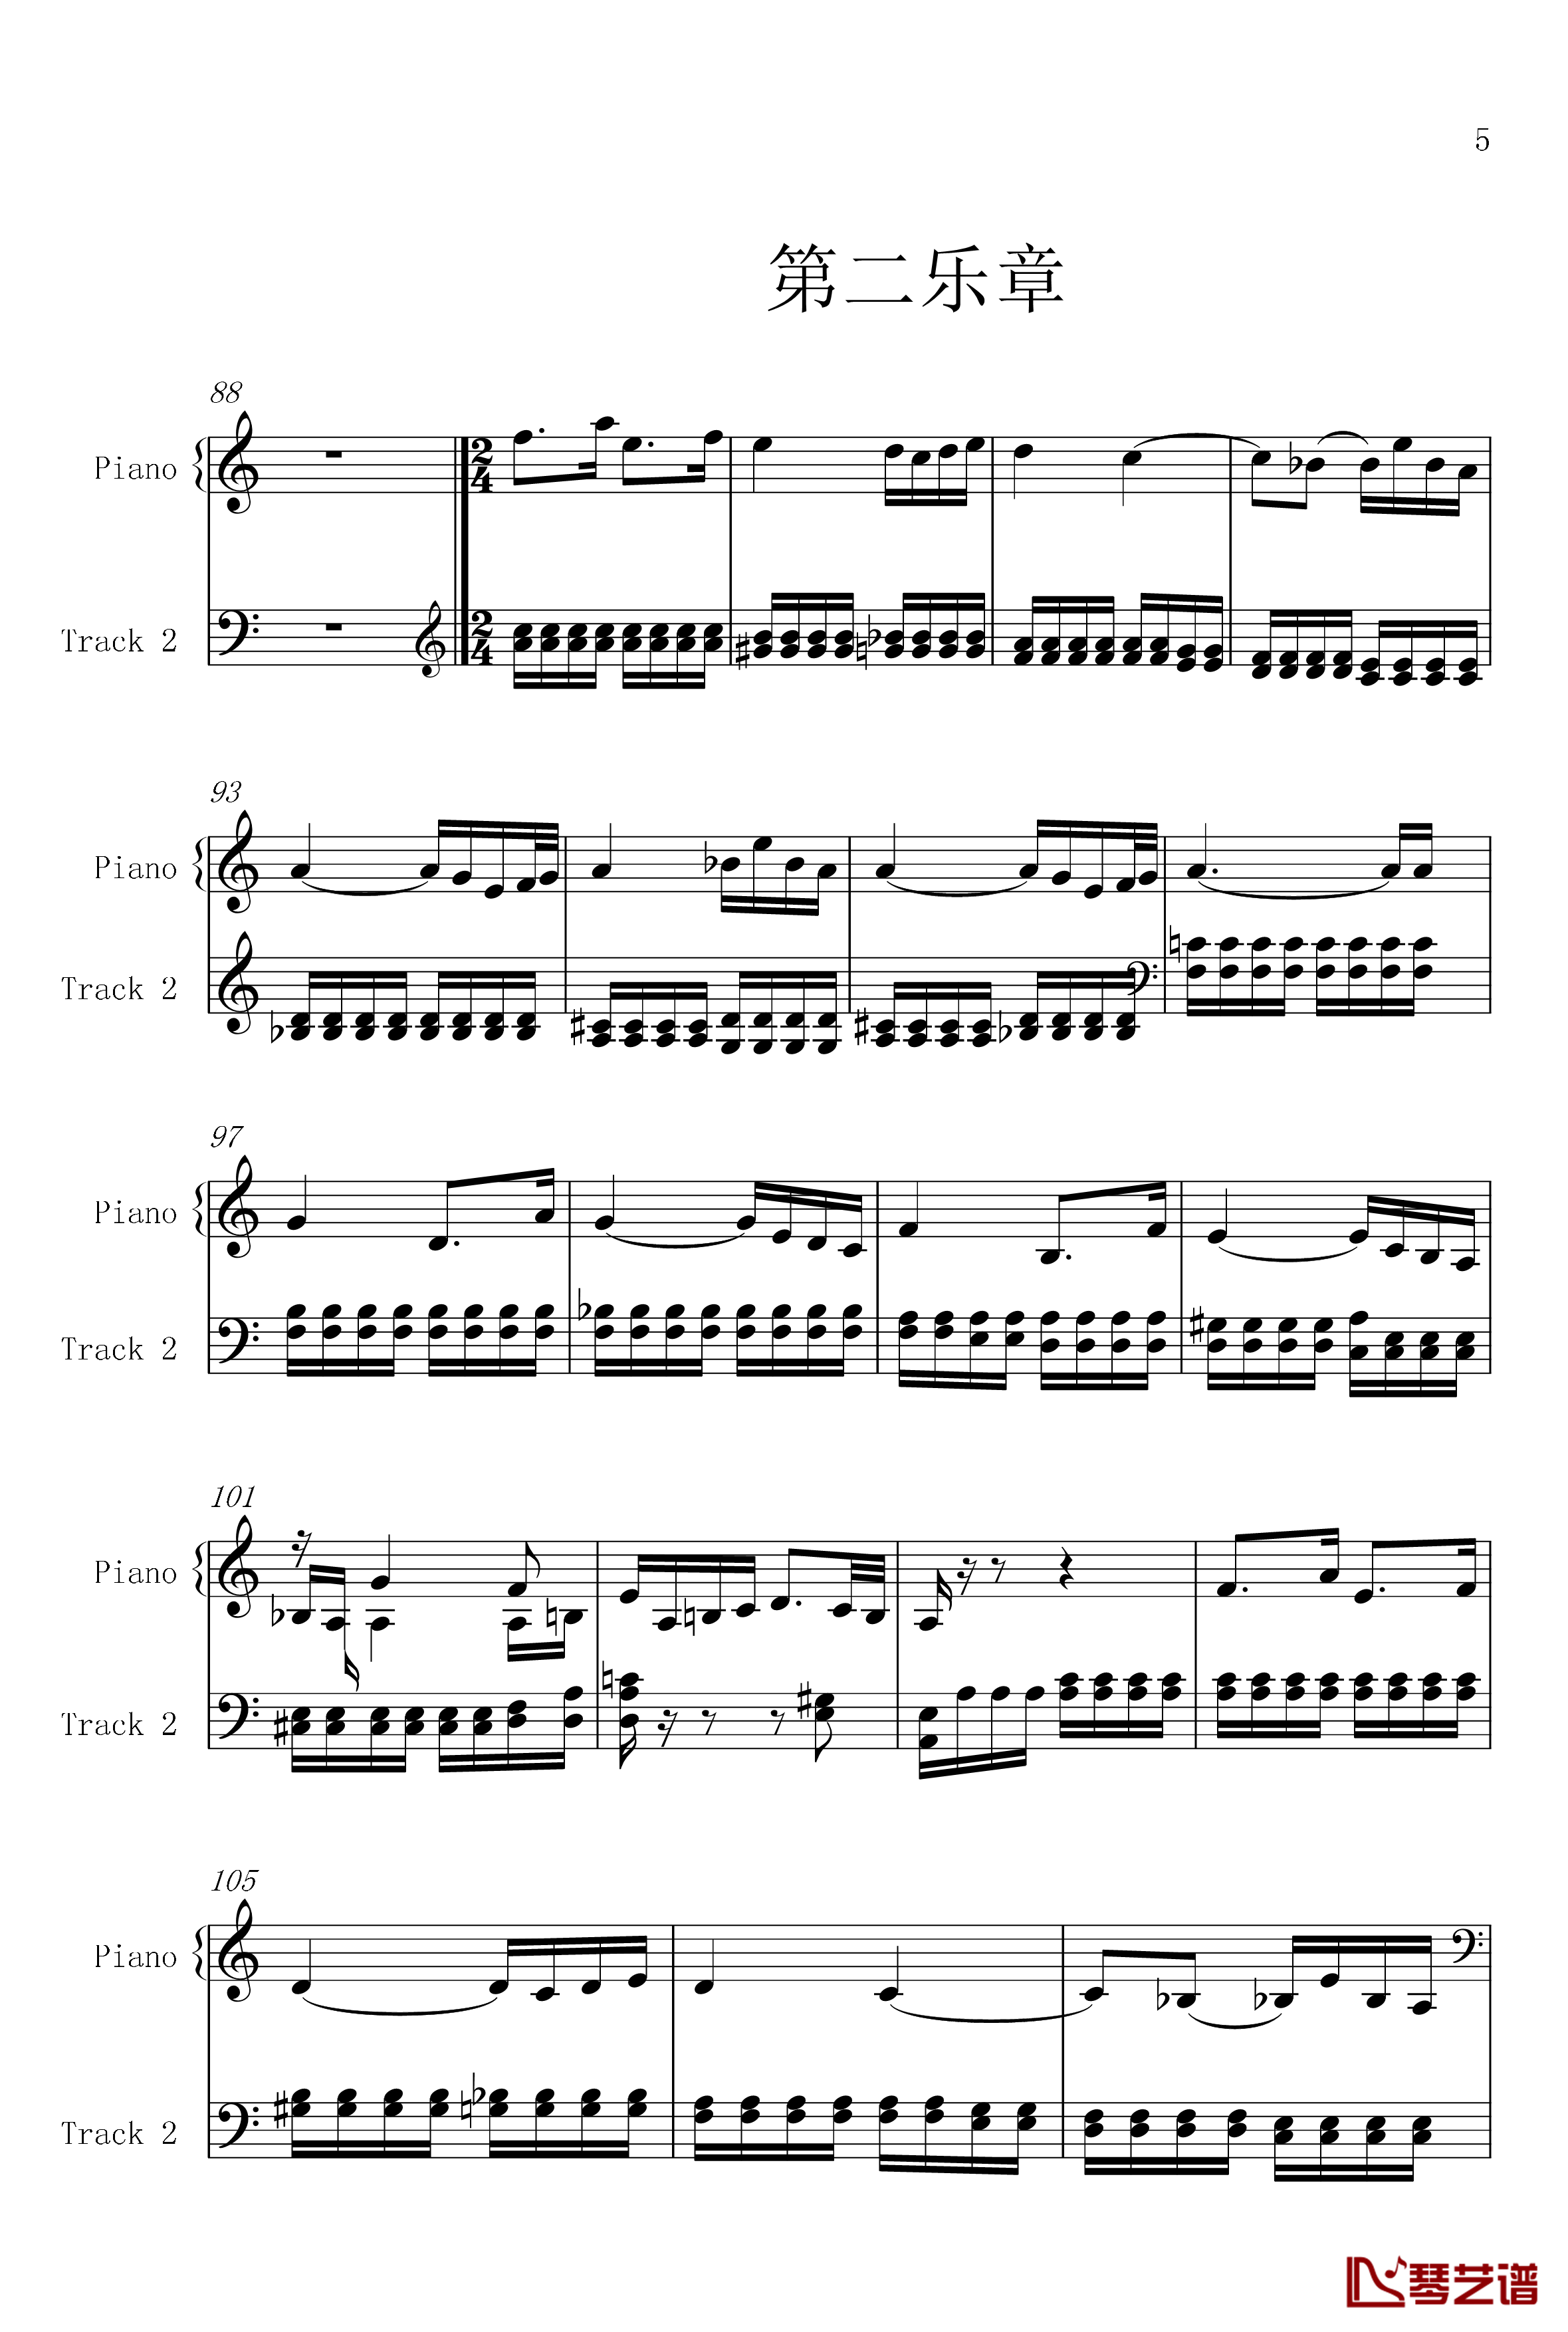 菲比赫小奏鸣曲钢琴谱-第一、二乐章-菲比赫5